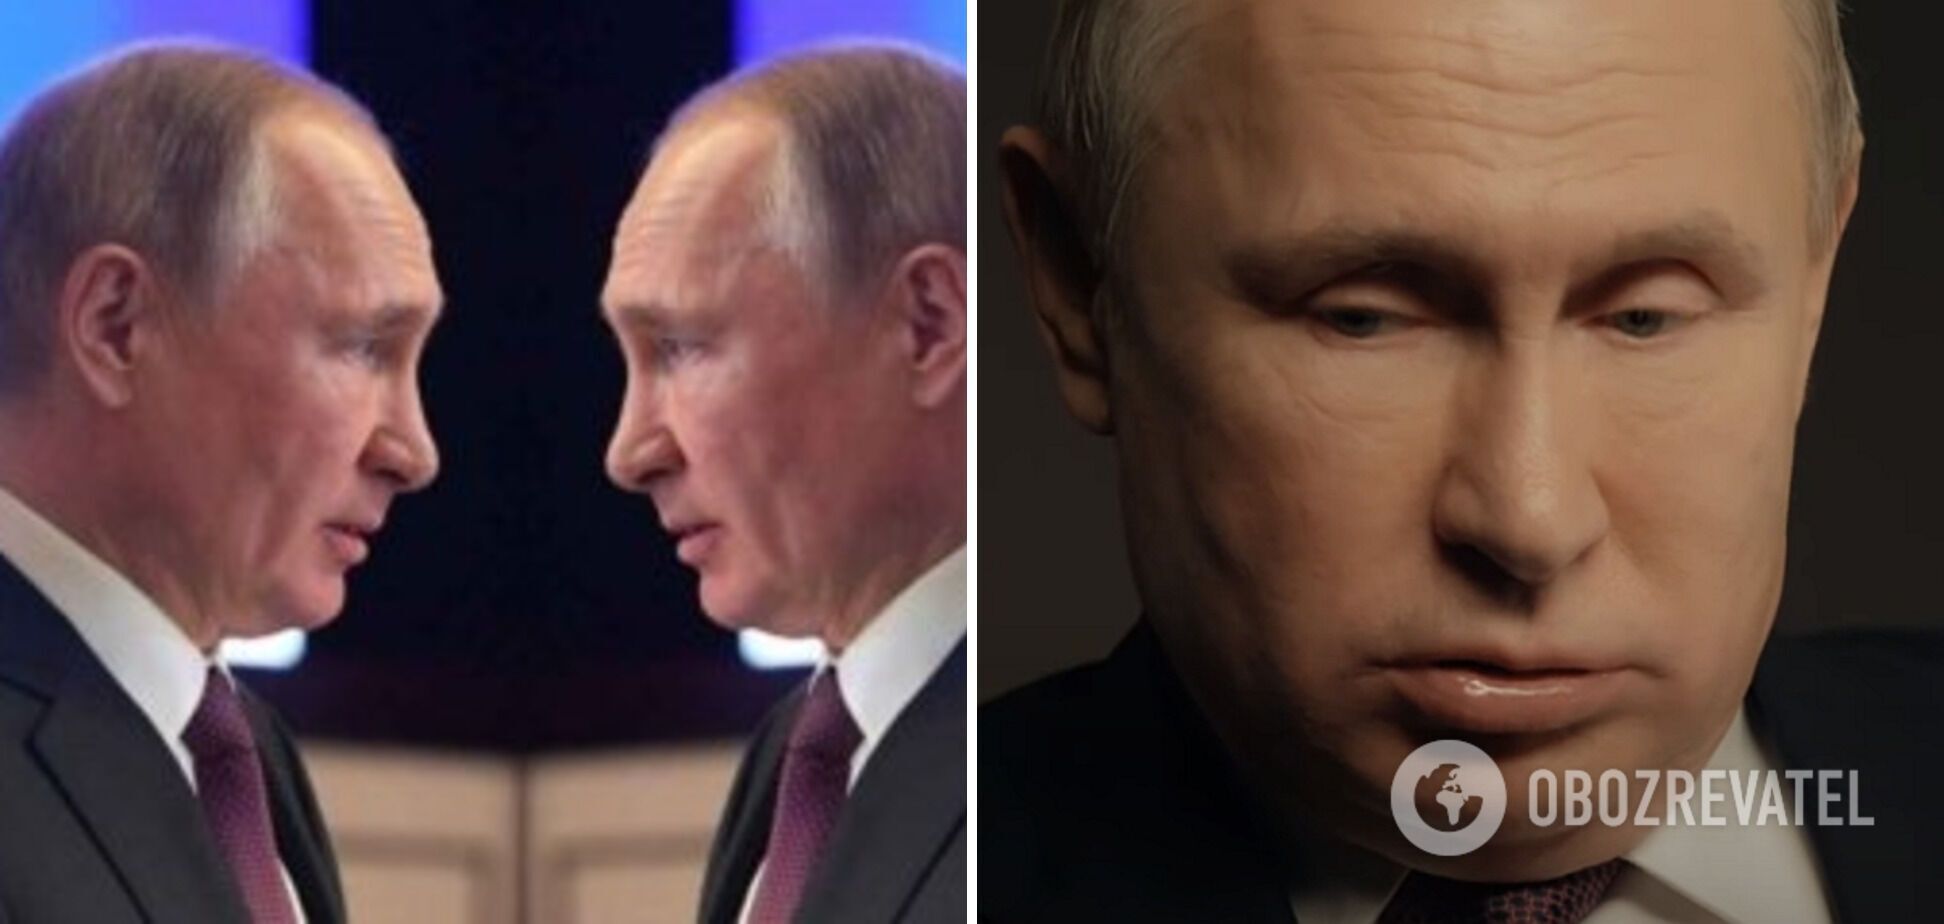 Путін змінився зовні, викликавши нові розмови про хворобу: що не так з обличчям президента РФ